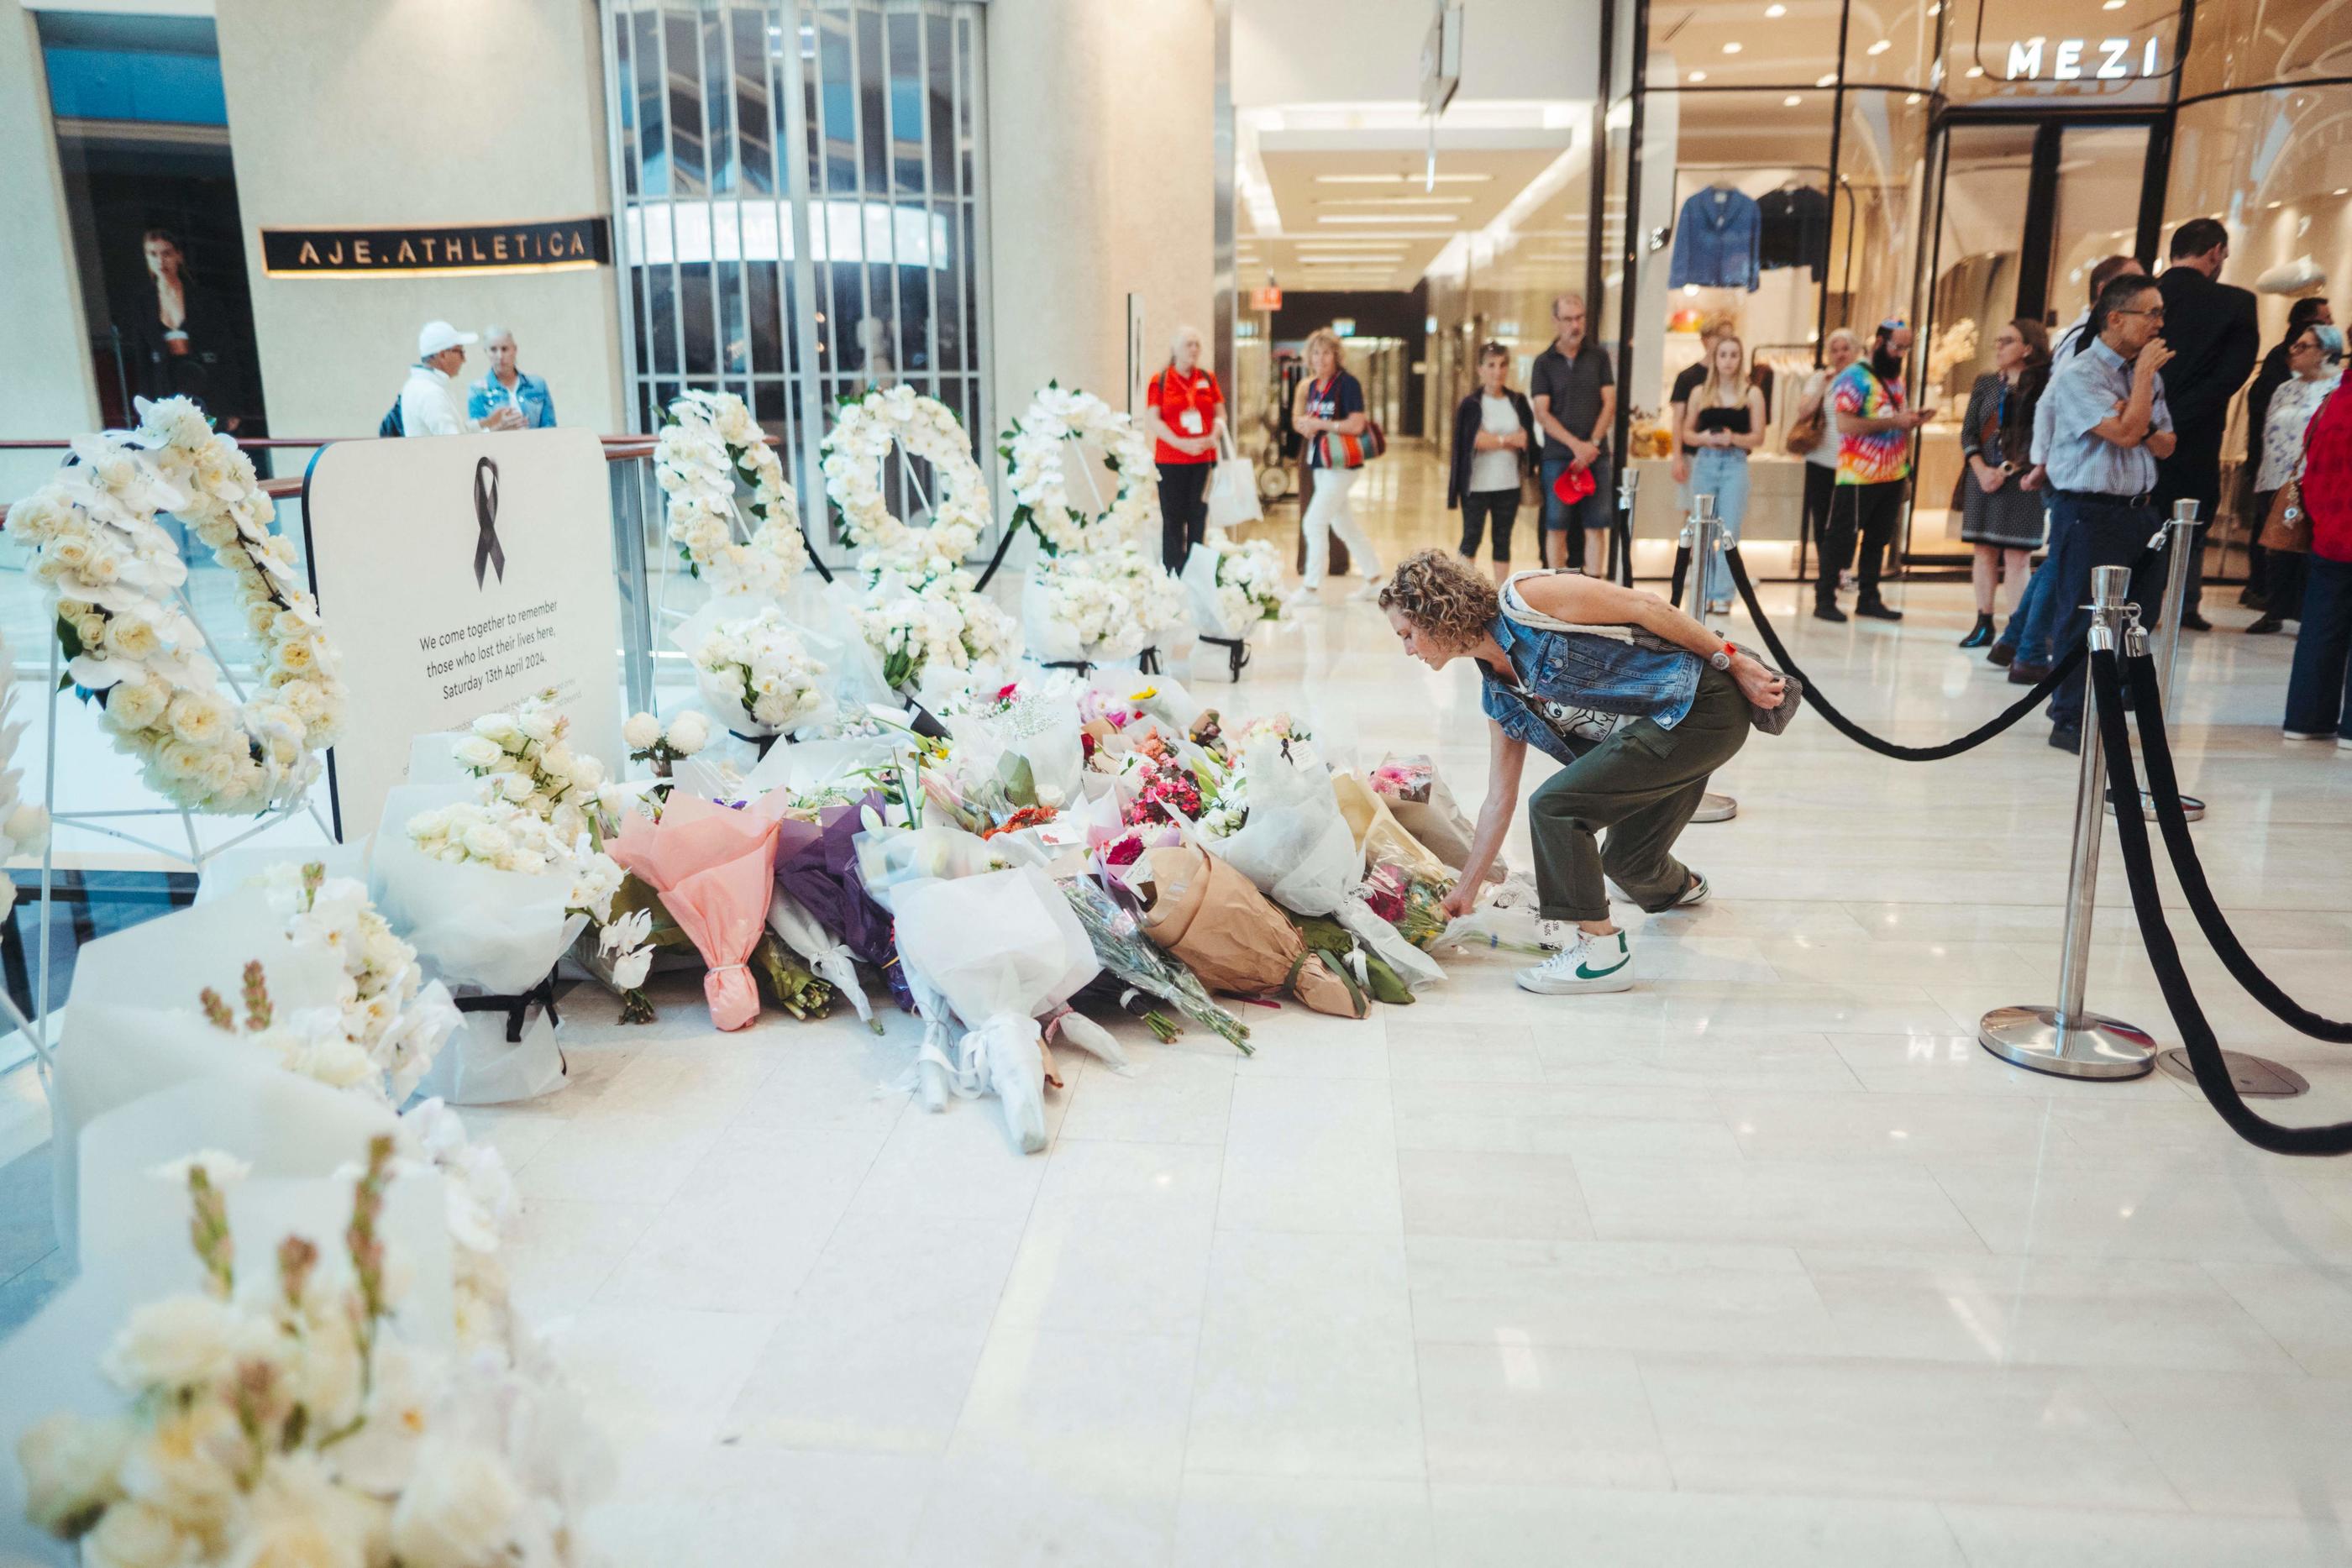 Tout au long de la semaine, de nombreuses personnes ont déposé des fleurs devant le vaste complexe commercial, généralement bondé de familles venues faire leurs courses. AFP / Dion Georgopoulos